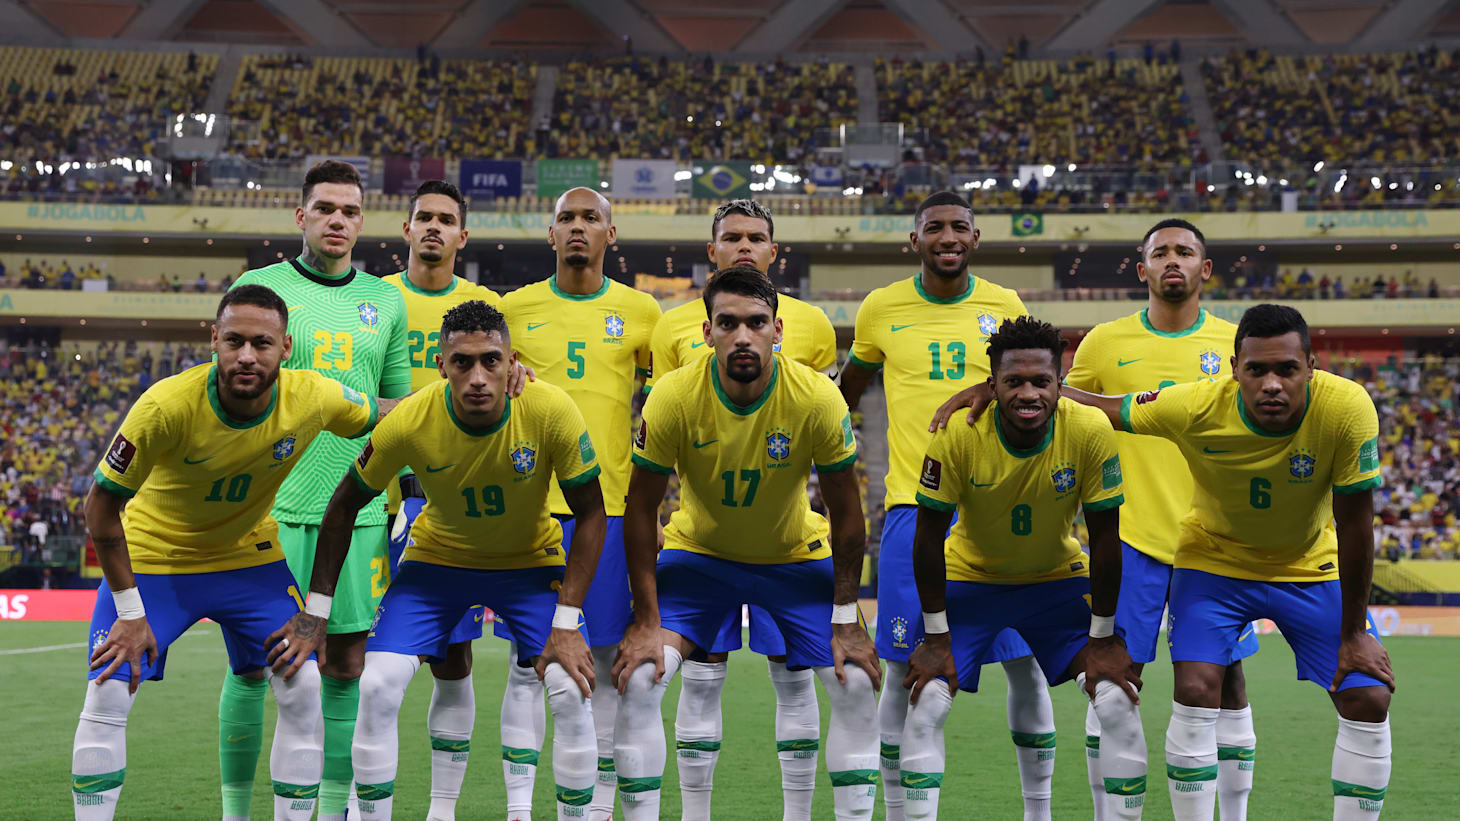 Veja a tabela dos jogos do Brasil no IFAF Américas Championship